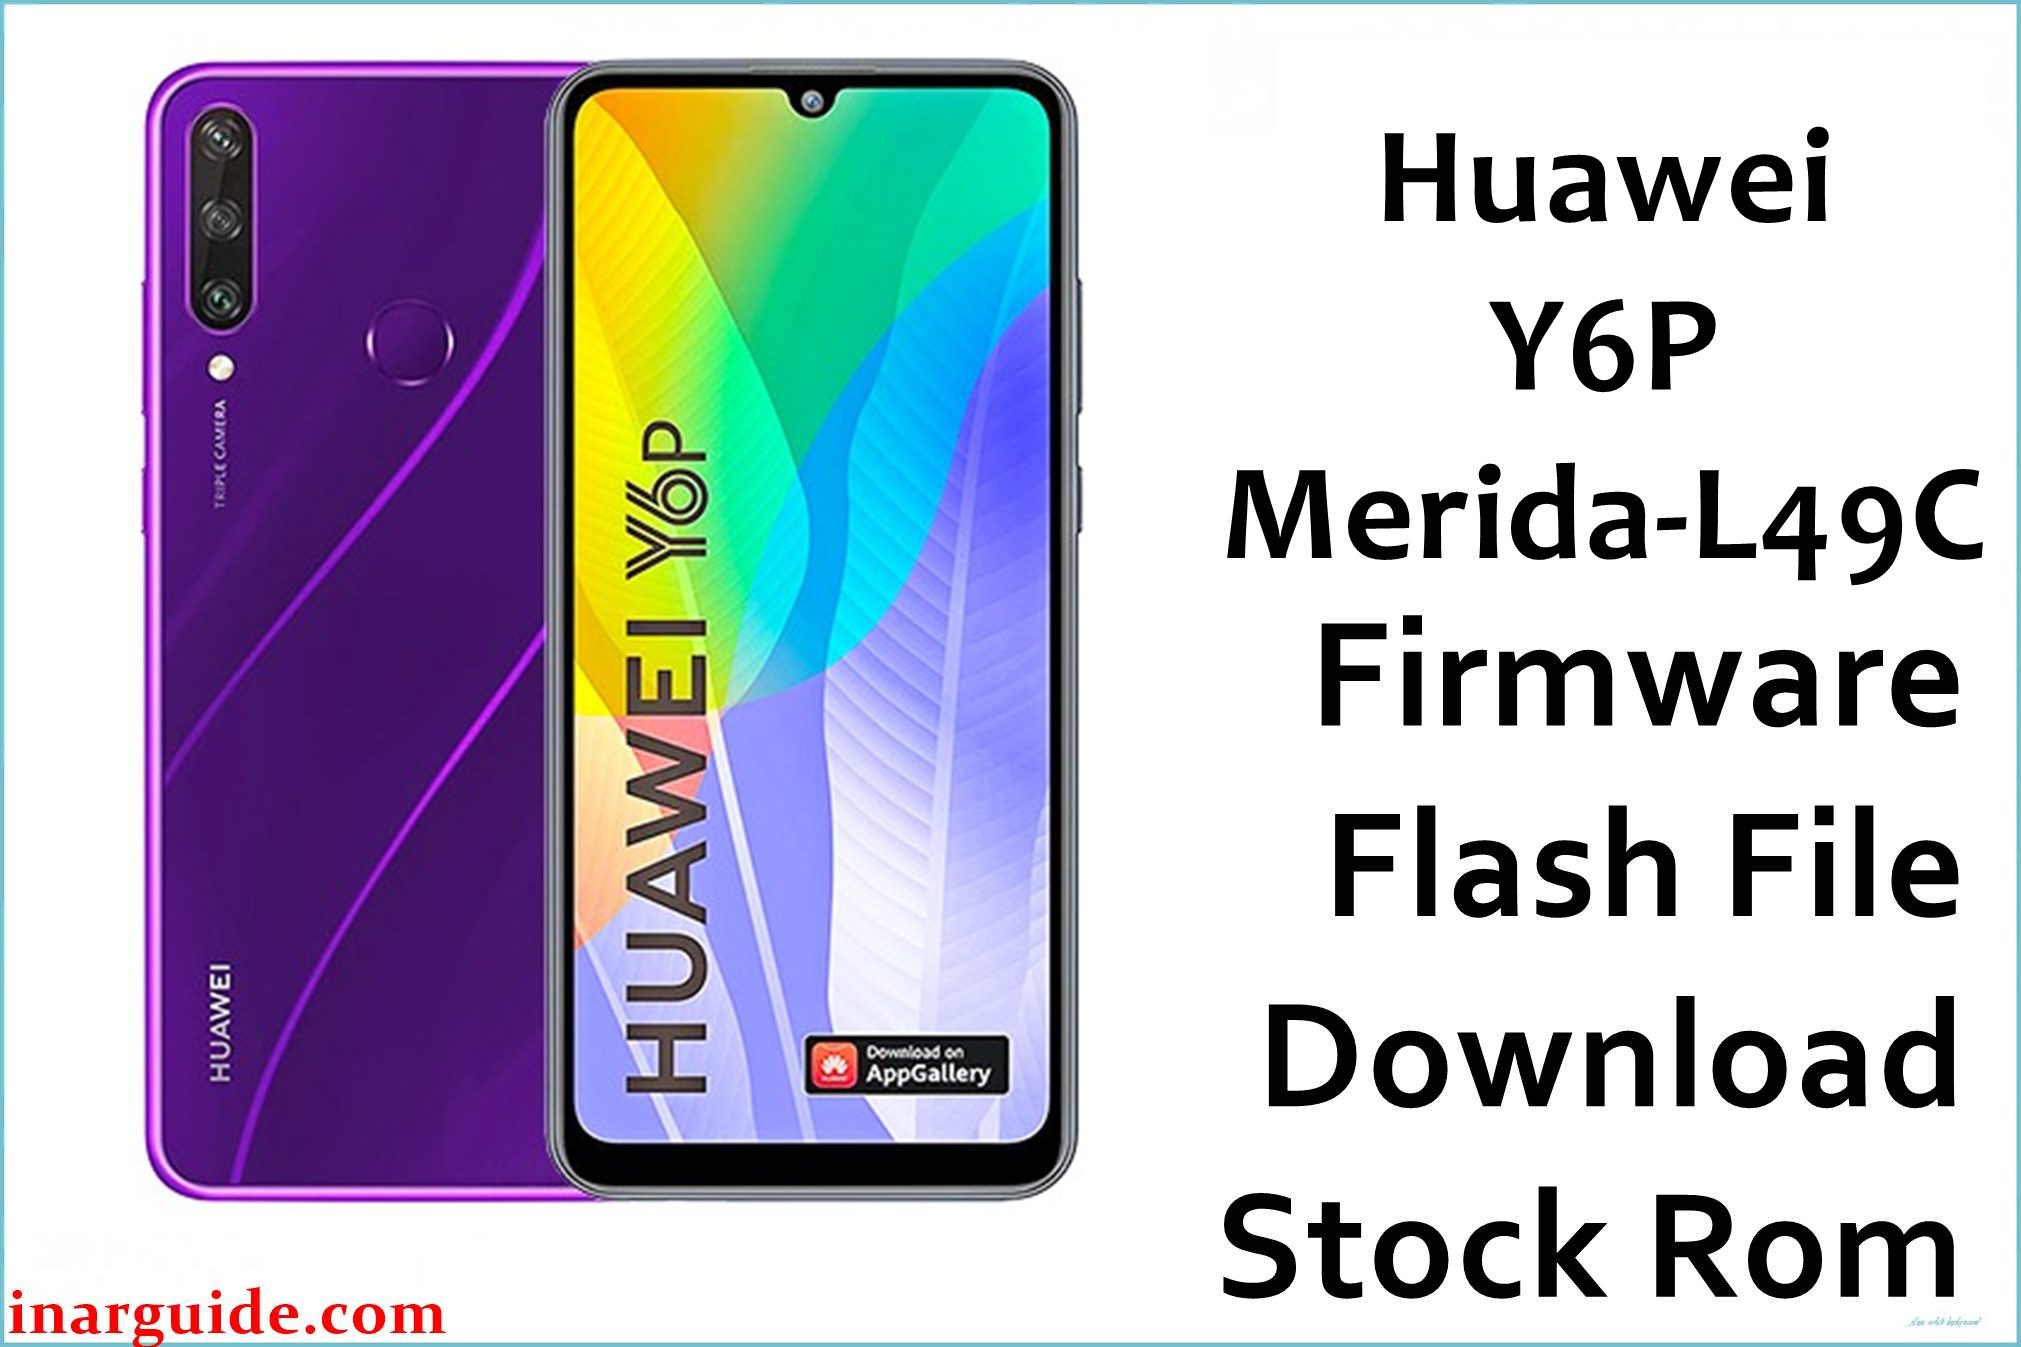 Huawei Y6P Merida L49C